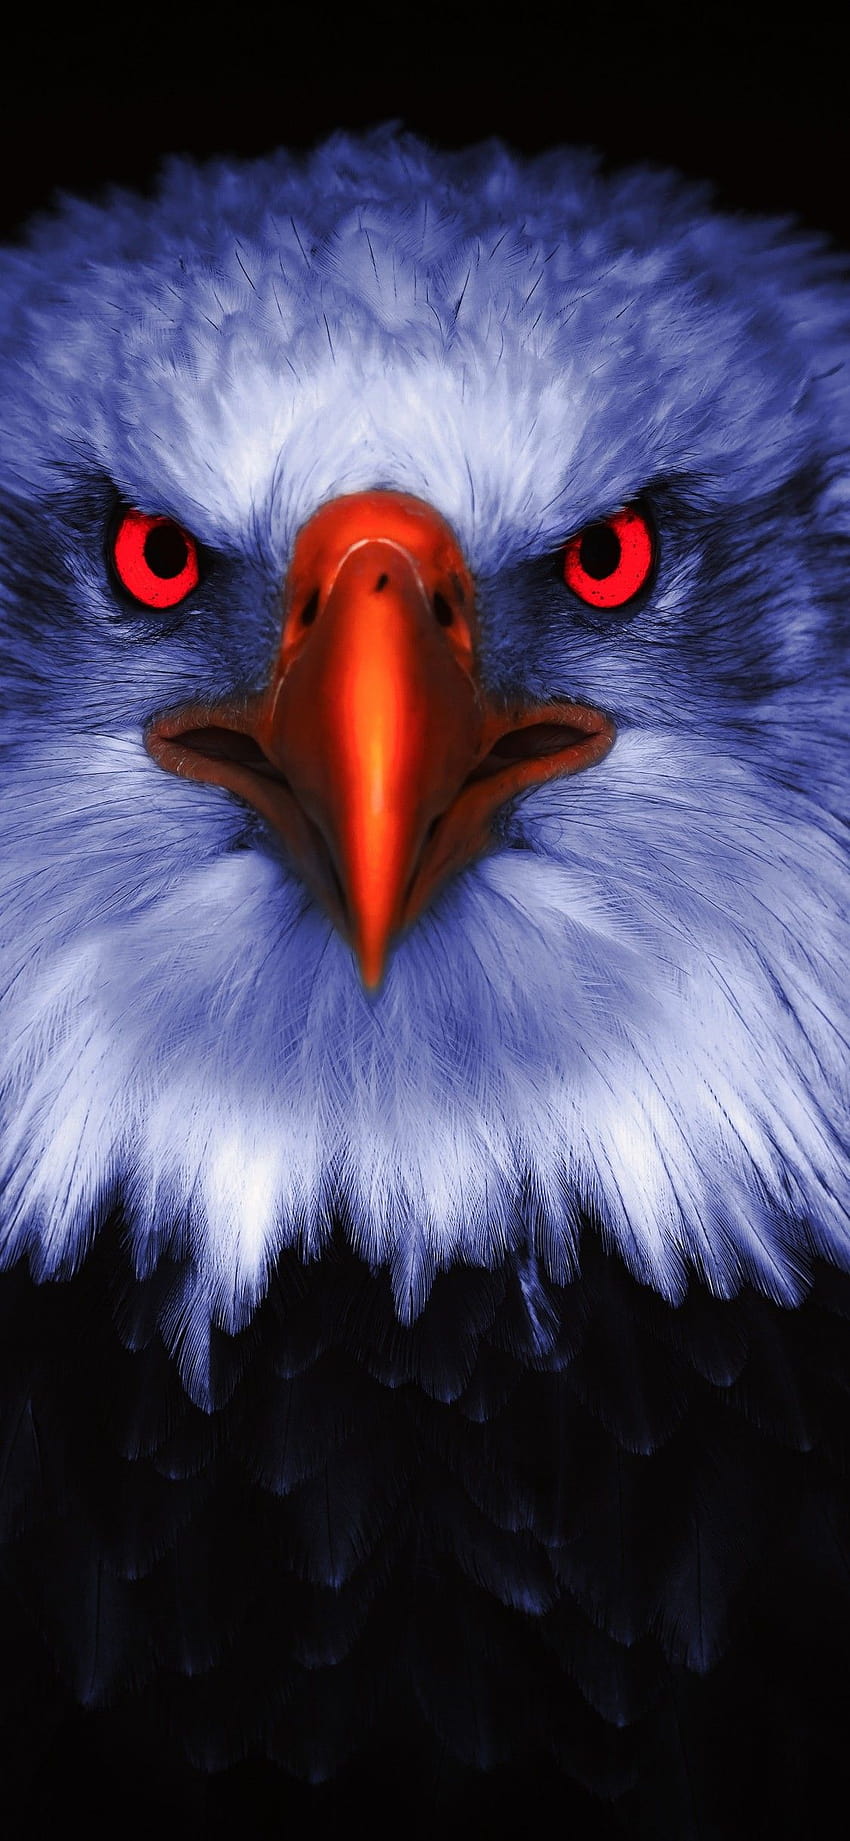 Adler, Raubvogel, Raubvögel, Rote Augen, Schwarzer Hintergrund, Tiere, Adler iphone HD-Handy-Hintergrundbild